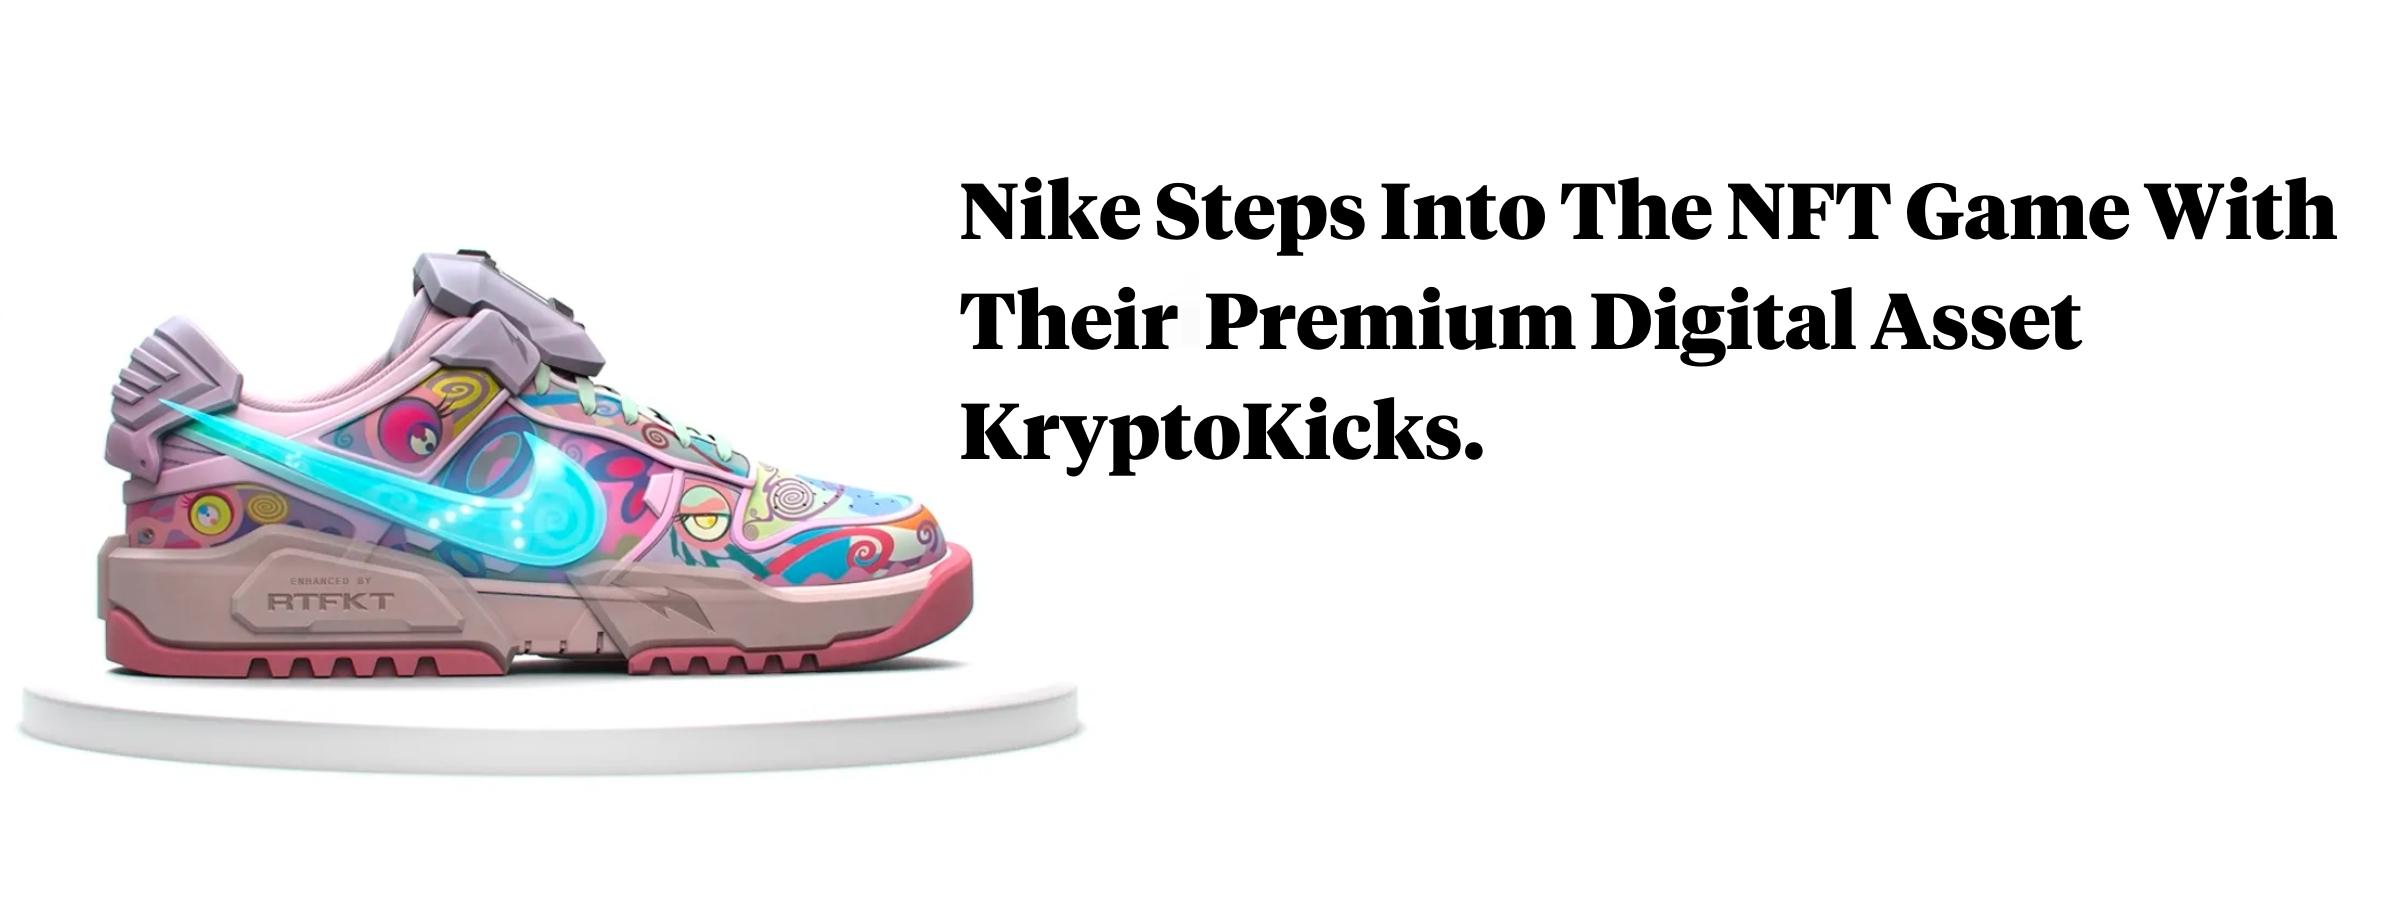 Nike Kryptokicks